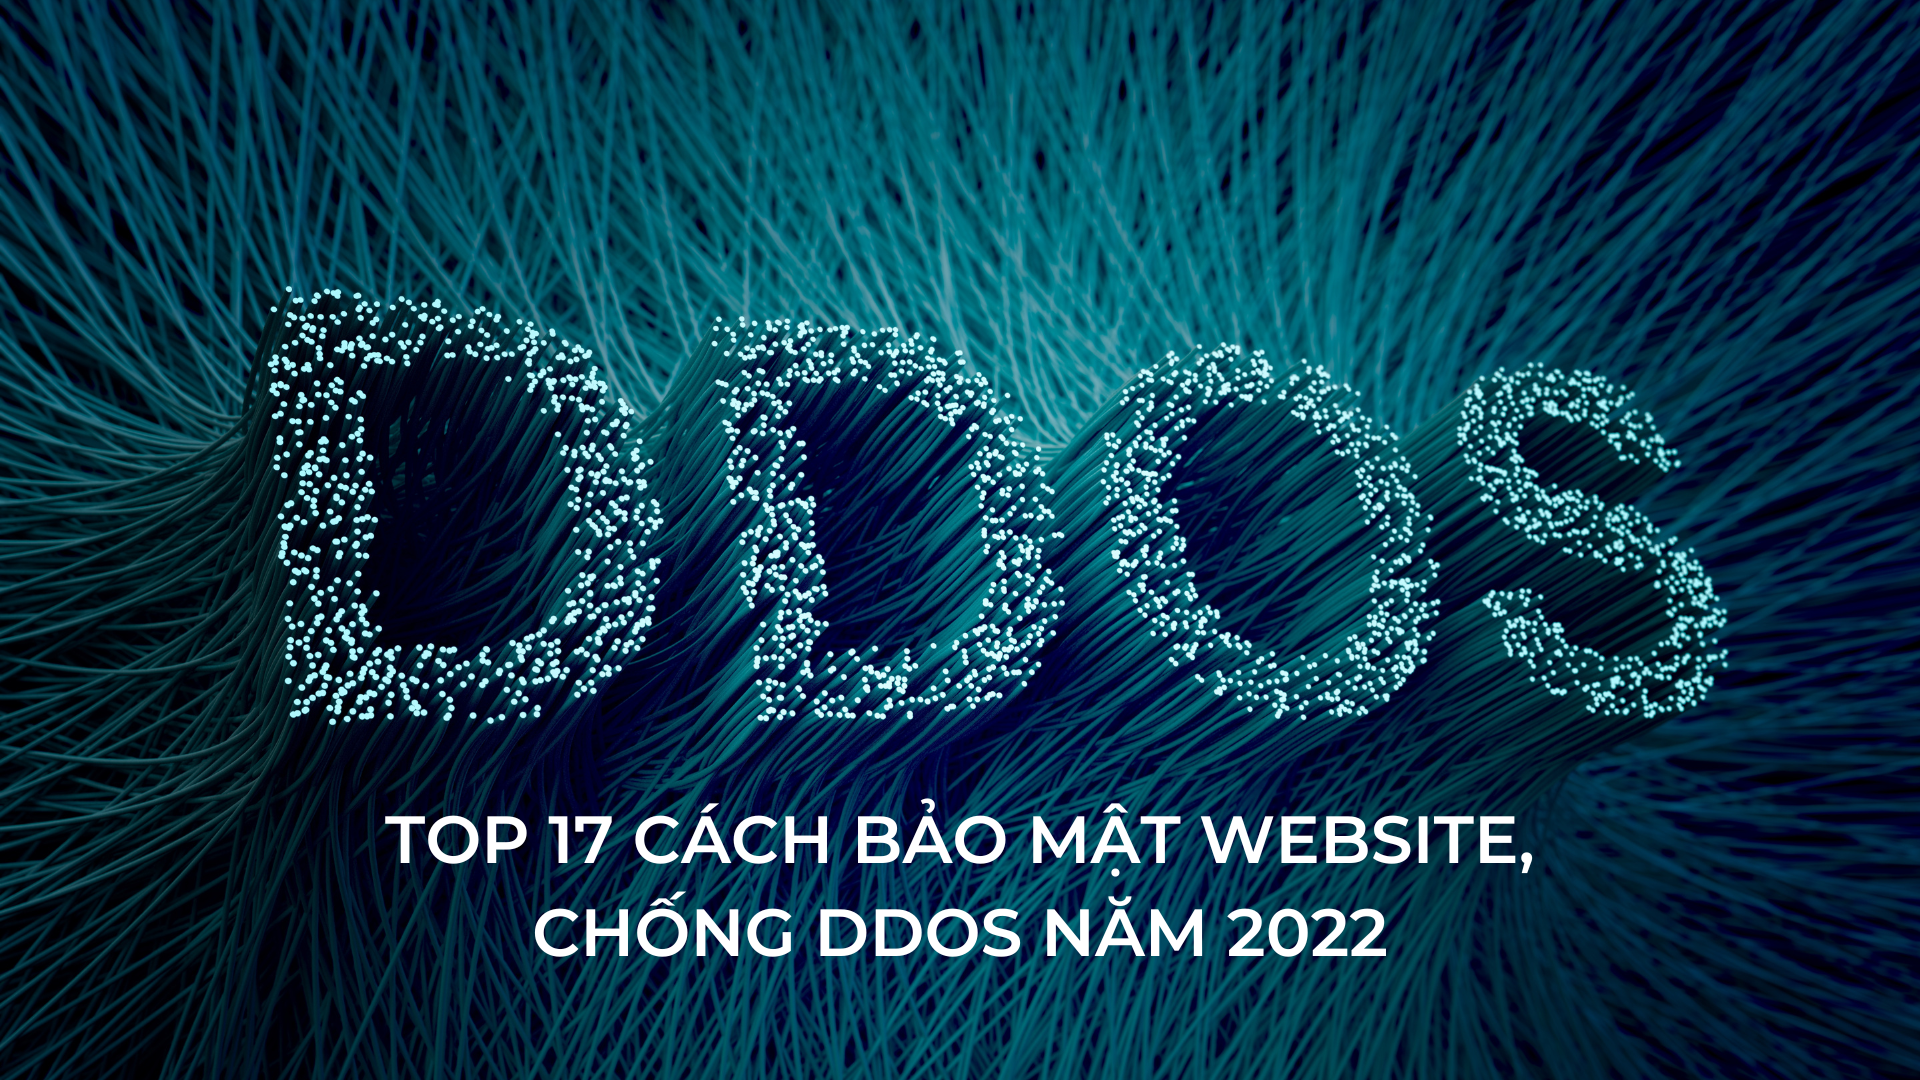 Top 17 cách bảo mật Website, chống DDoS năm 2022